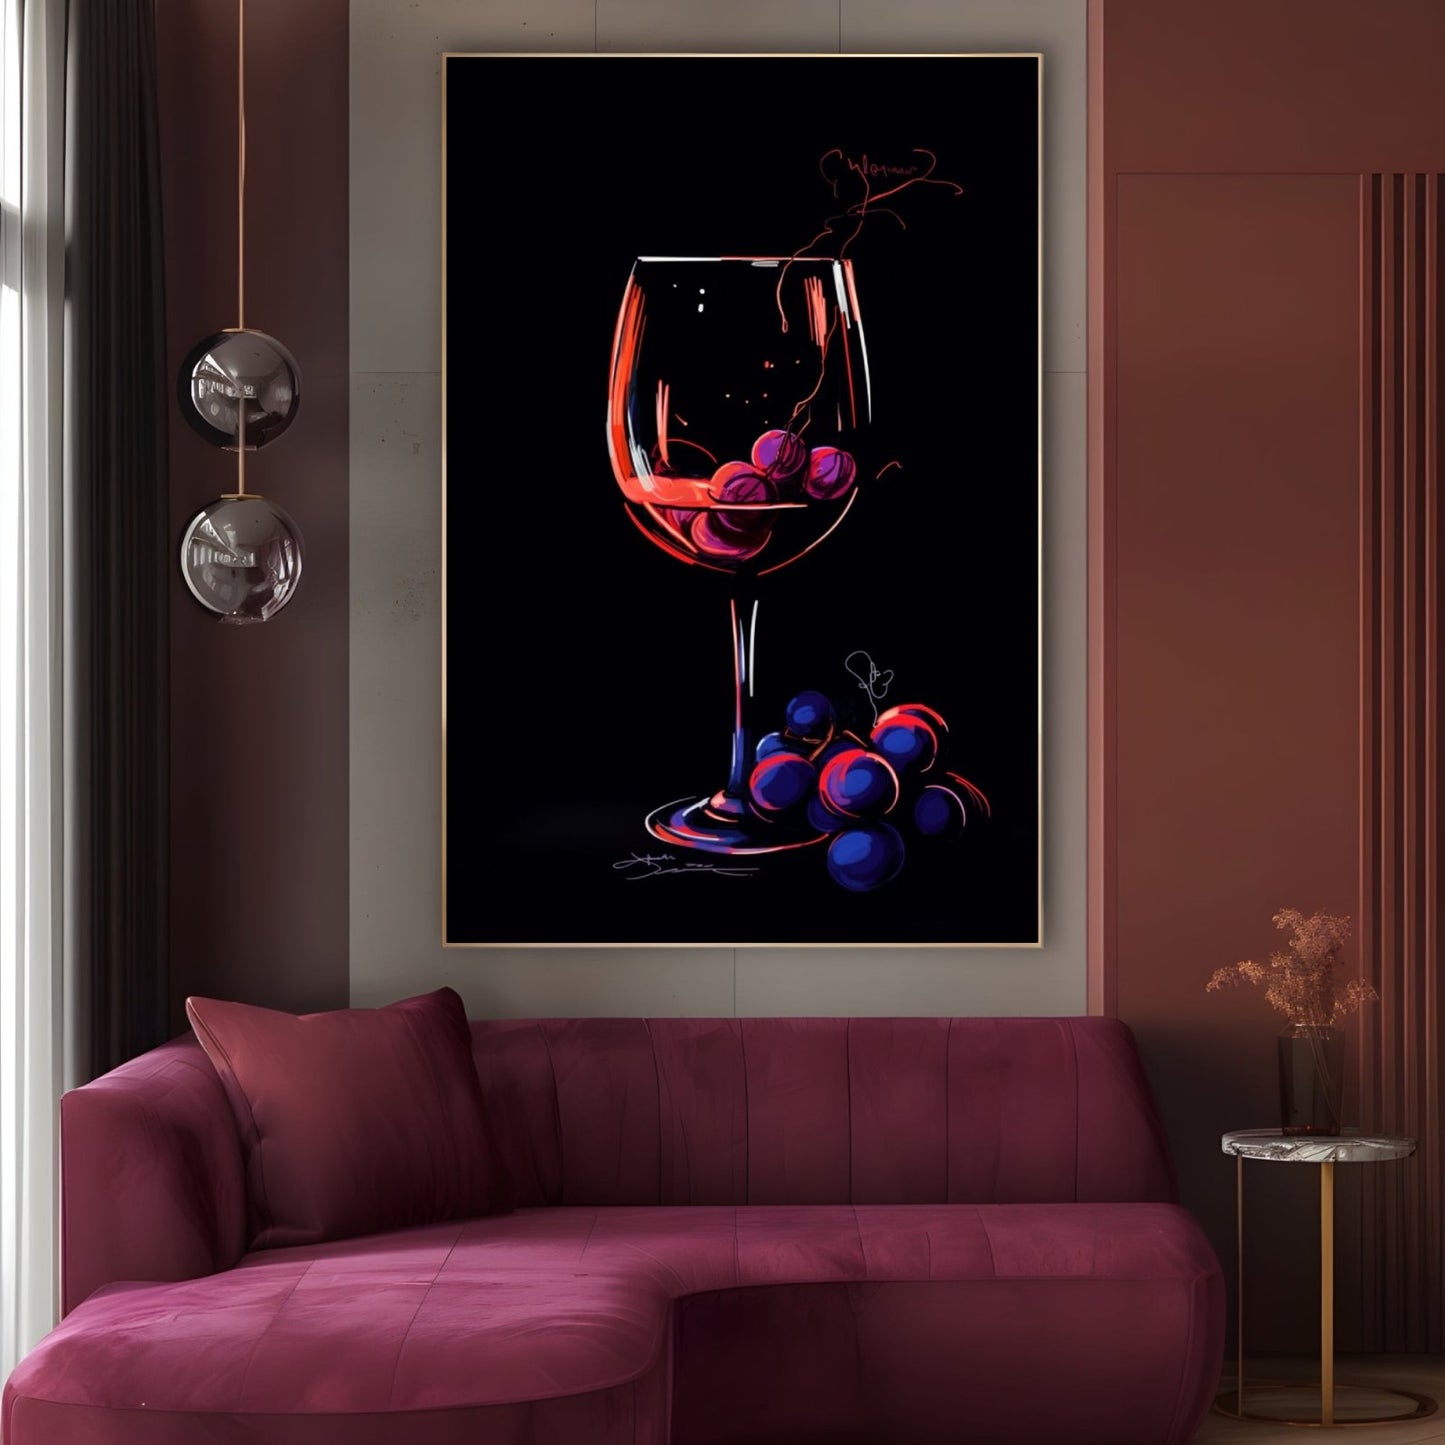 Wine vine